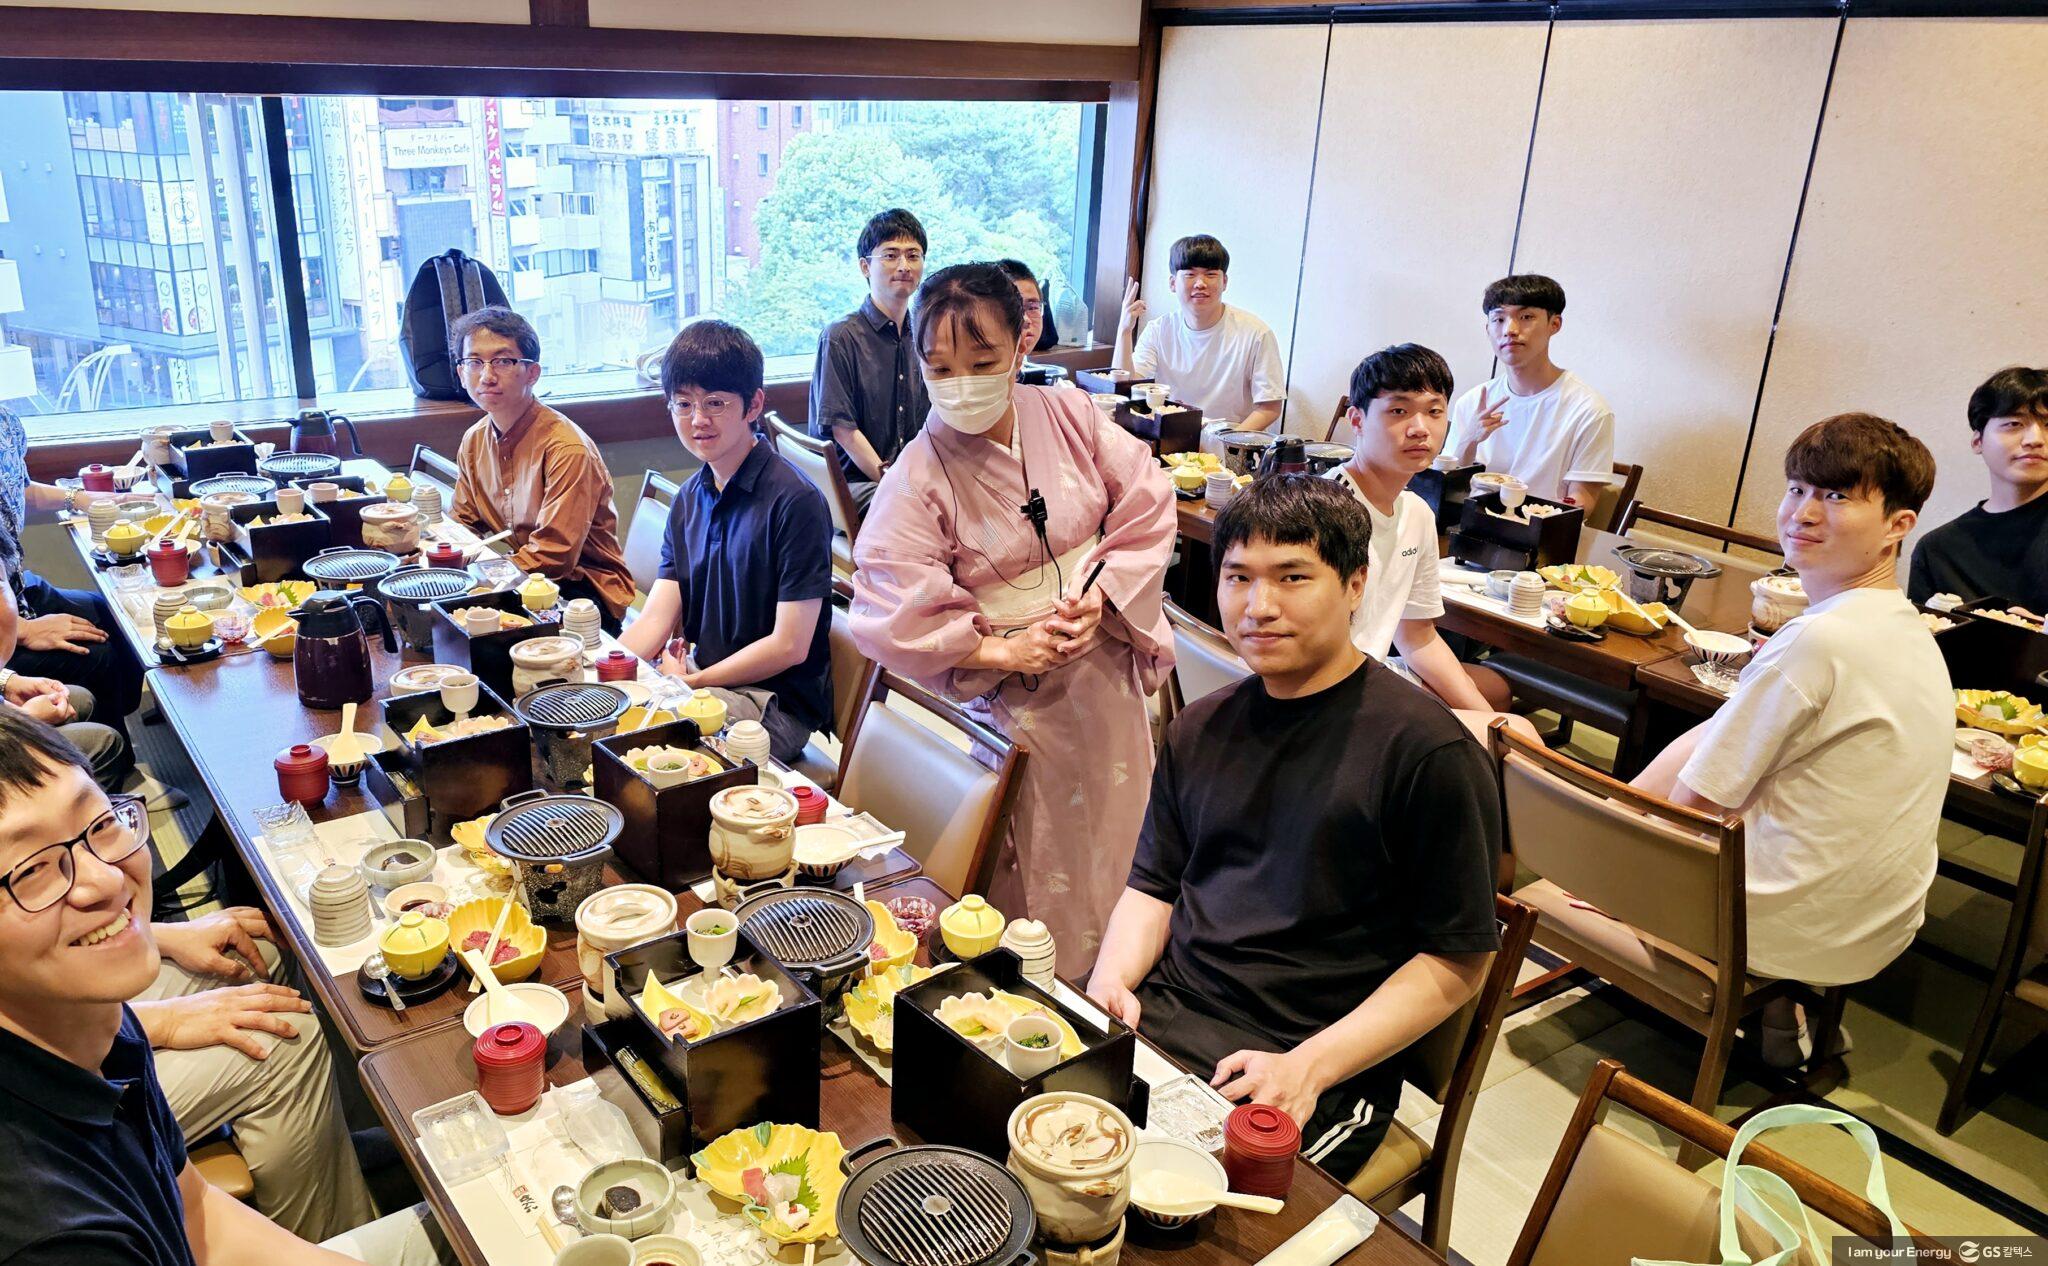 우리선수단과 일본팀 선수들이 간코 우에노에서 점심 식사를 하고 있는 모습. 창가쪽 왼쪽부터 고이케 요시히로7단, 히로세 유이치7단, 히라타 도모야8단의 모습입니다.고타로4단의 얼굴은 아쉽게도 절반만 보이네요.